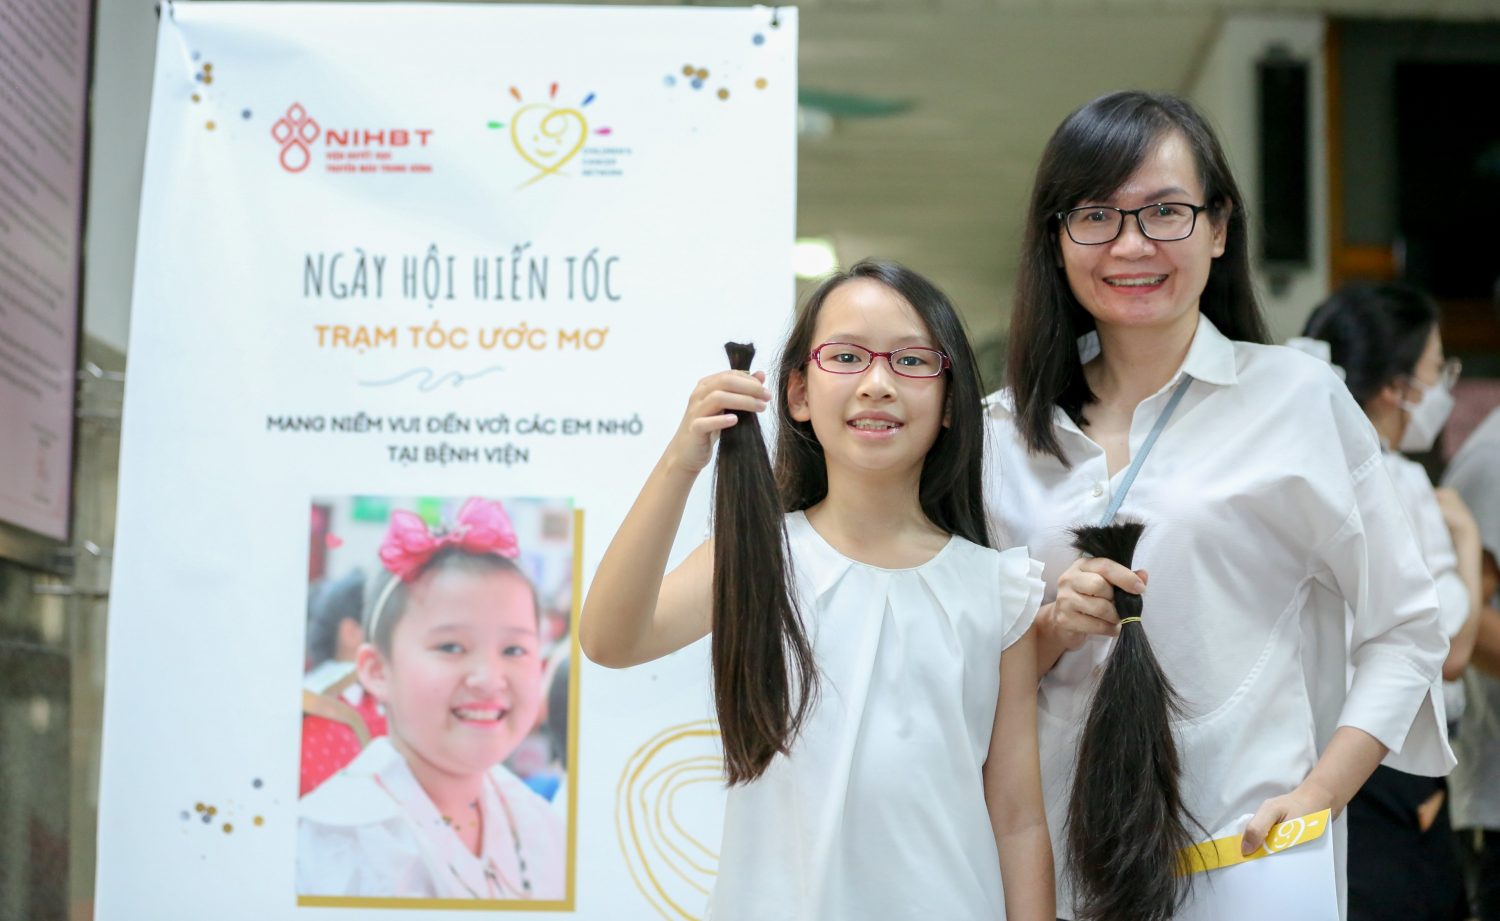 Hiến tóc cho bệnh nhân ung thư có giúp thúc đẩy sự phát triển của phong trào chăm sóc và giúp đỡ người bệnh không?